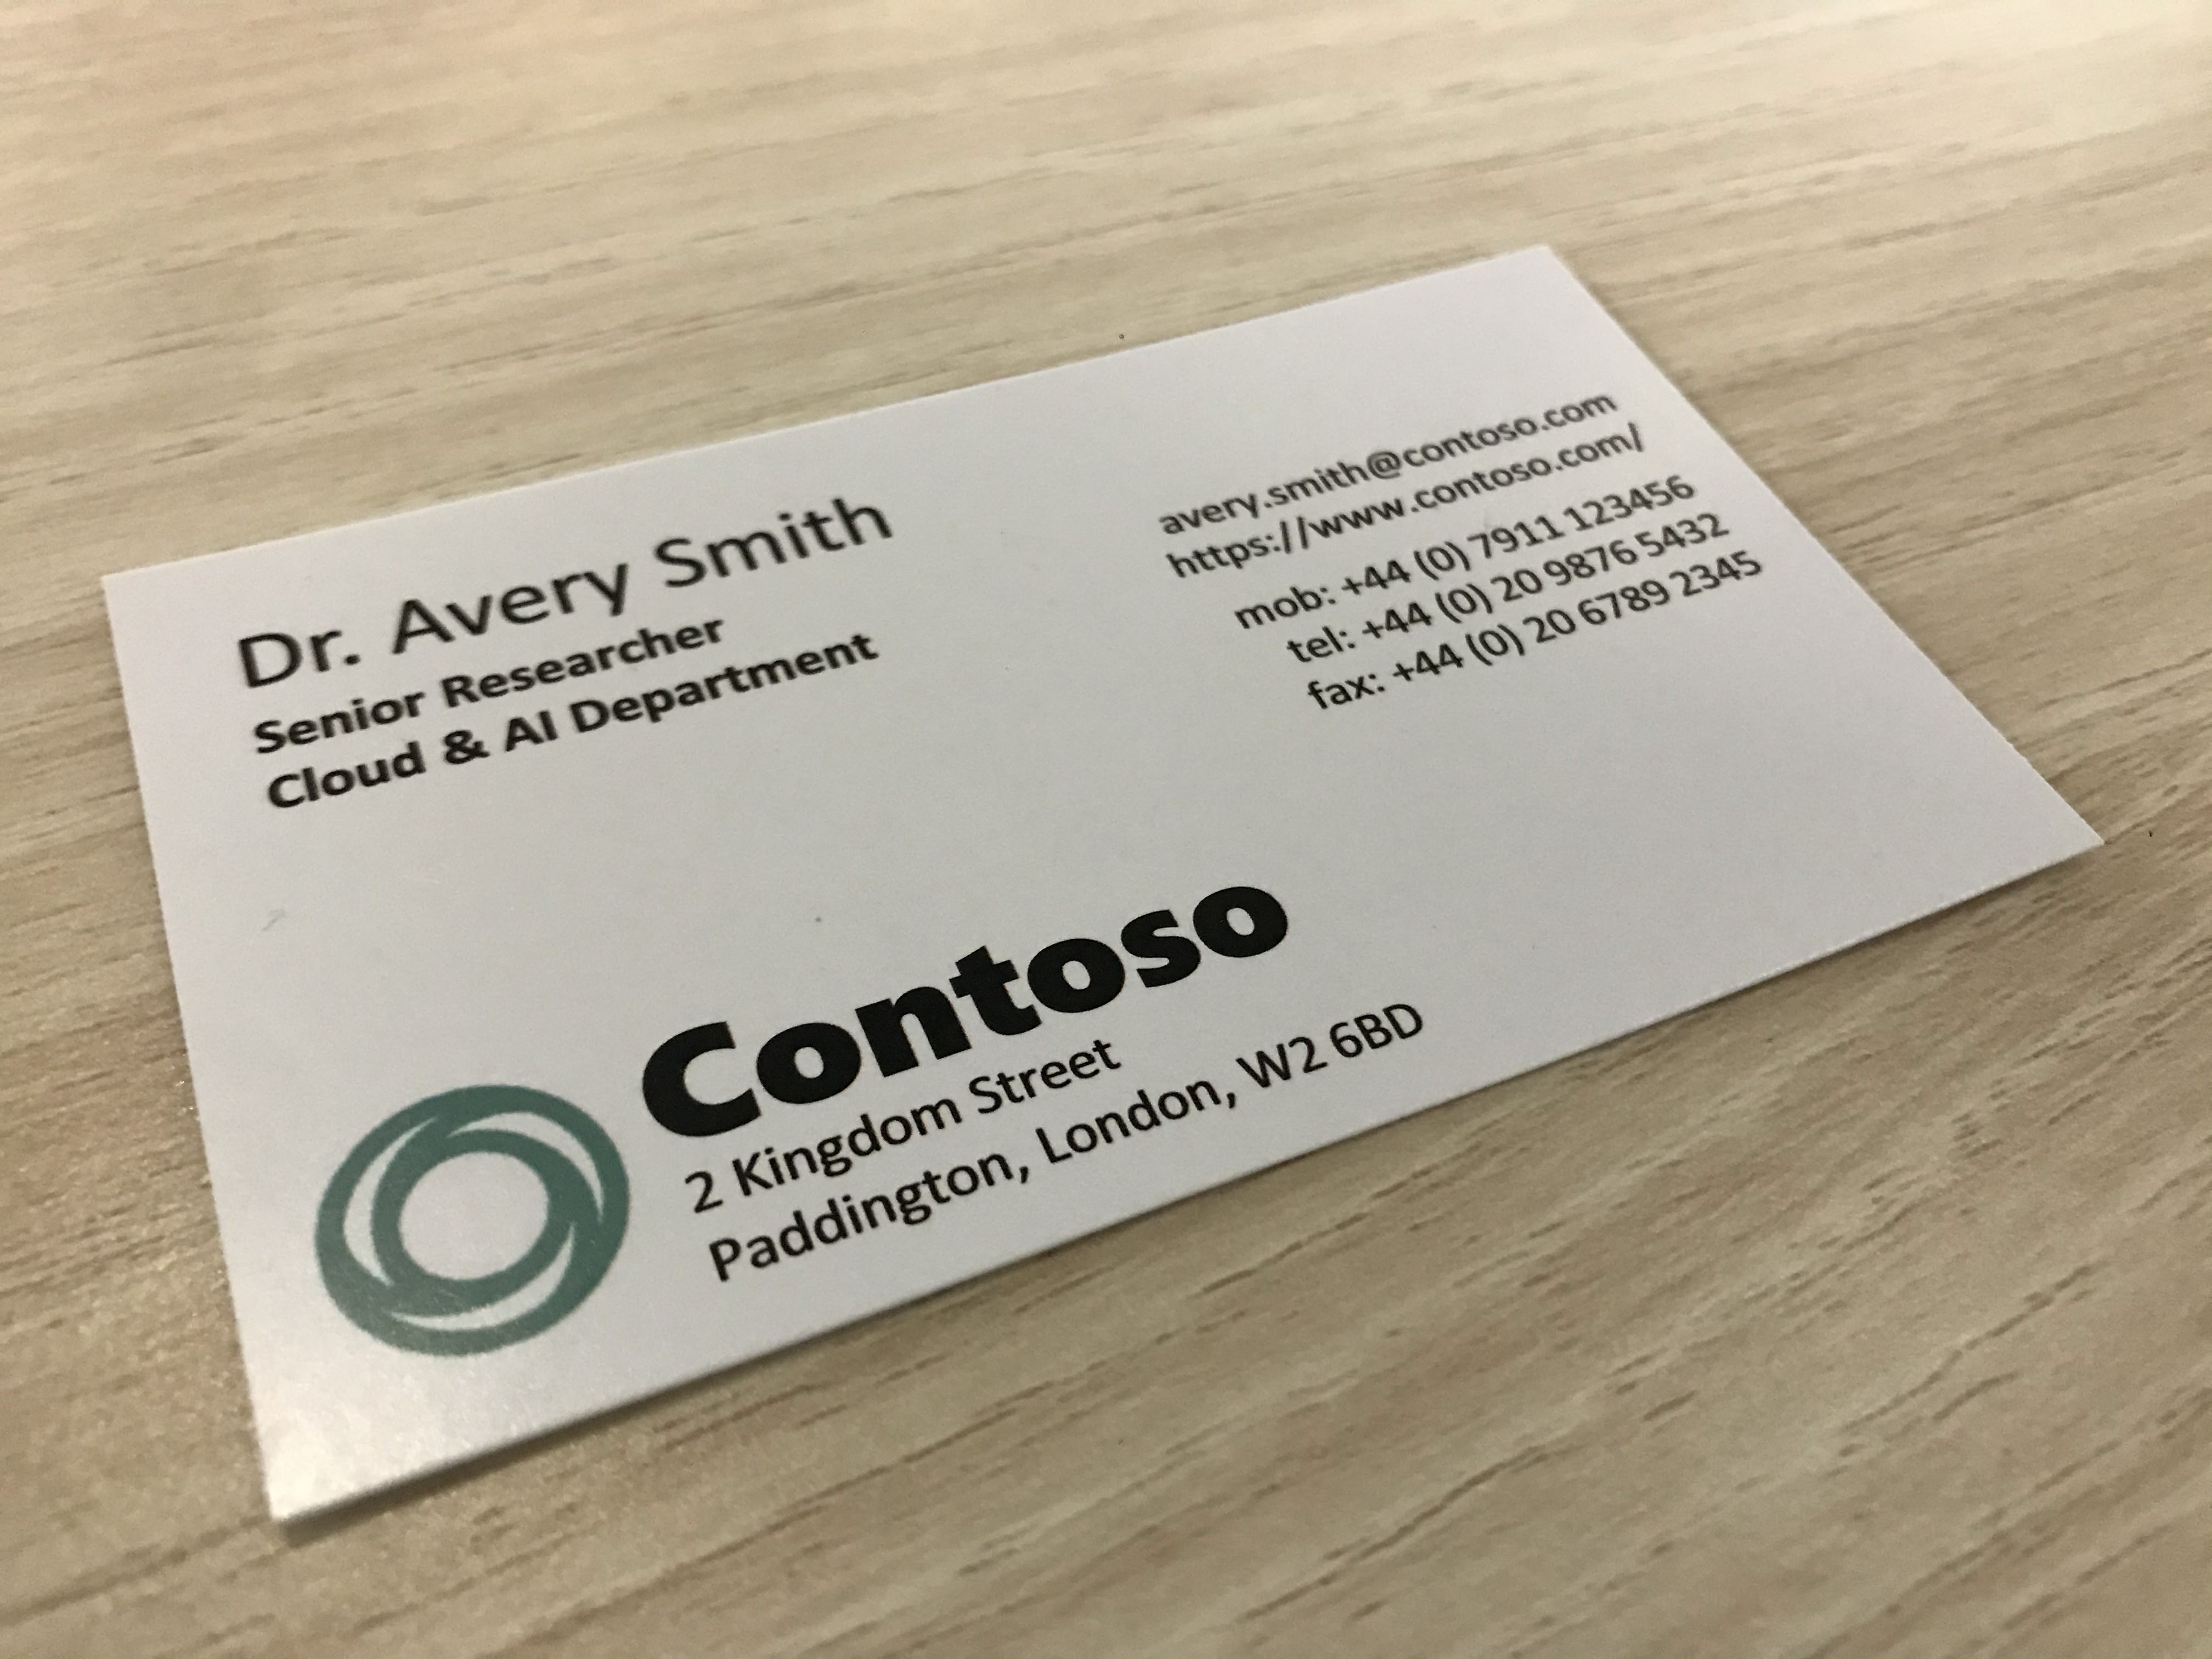 Fotoğrafta Contoso adlı bir şirketin kartviziti gösterilmektedir.